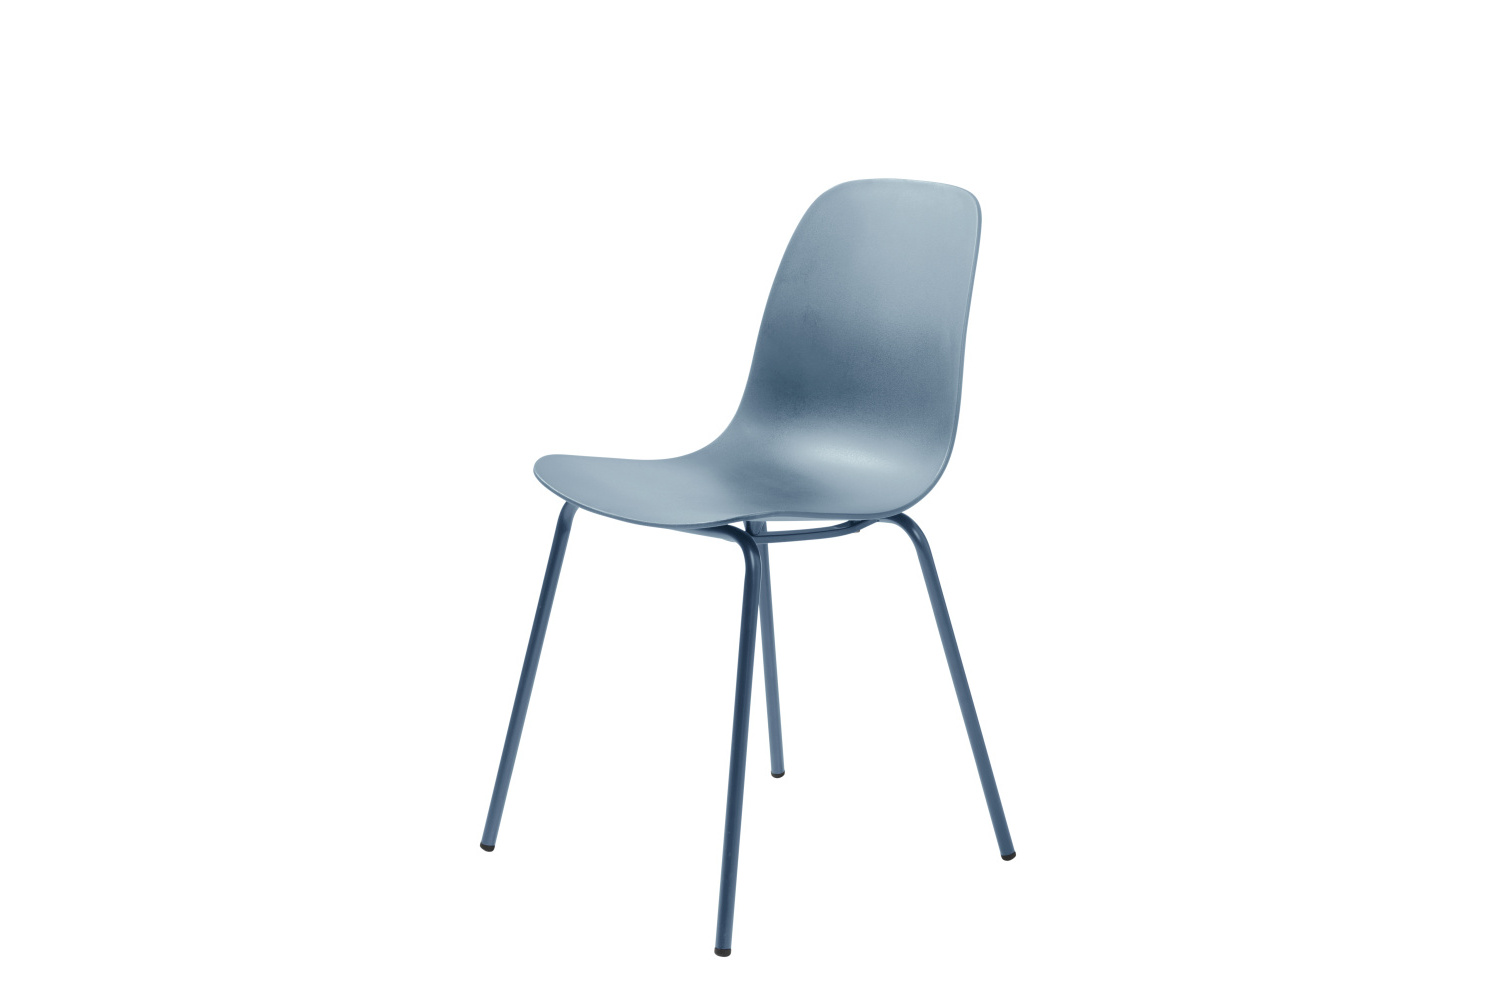 Furniria Designová židle Jensen matná modrá